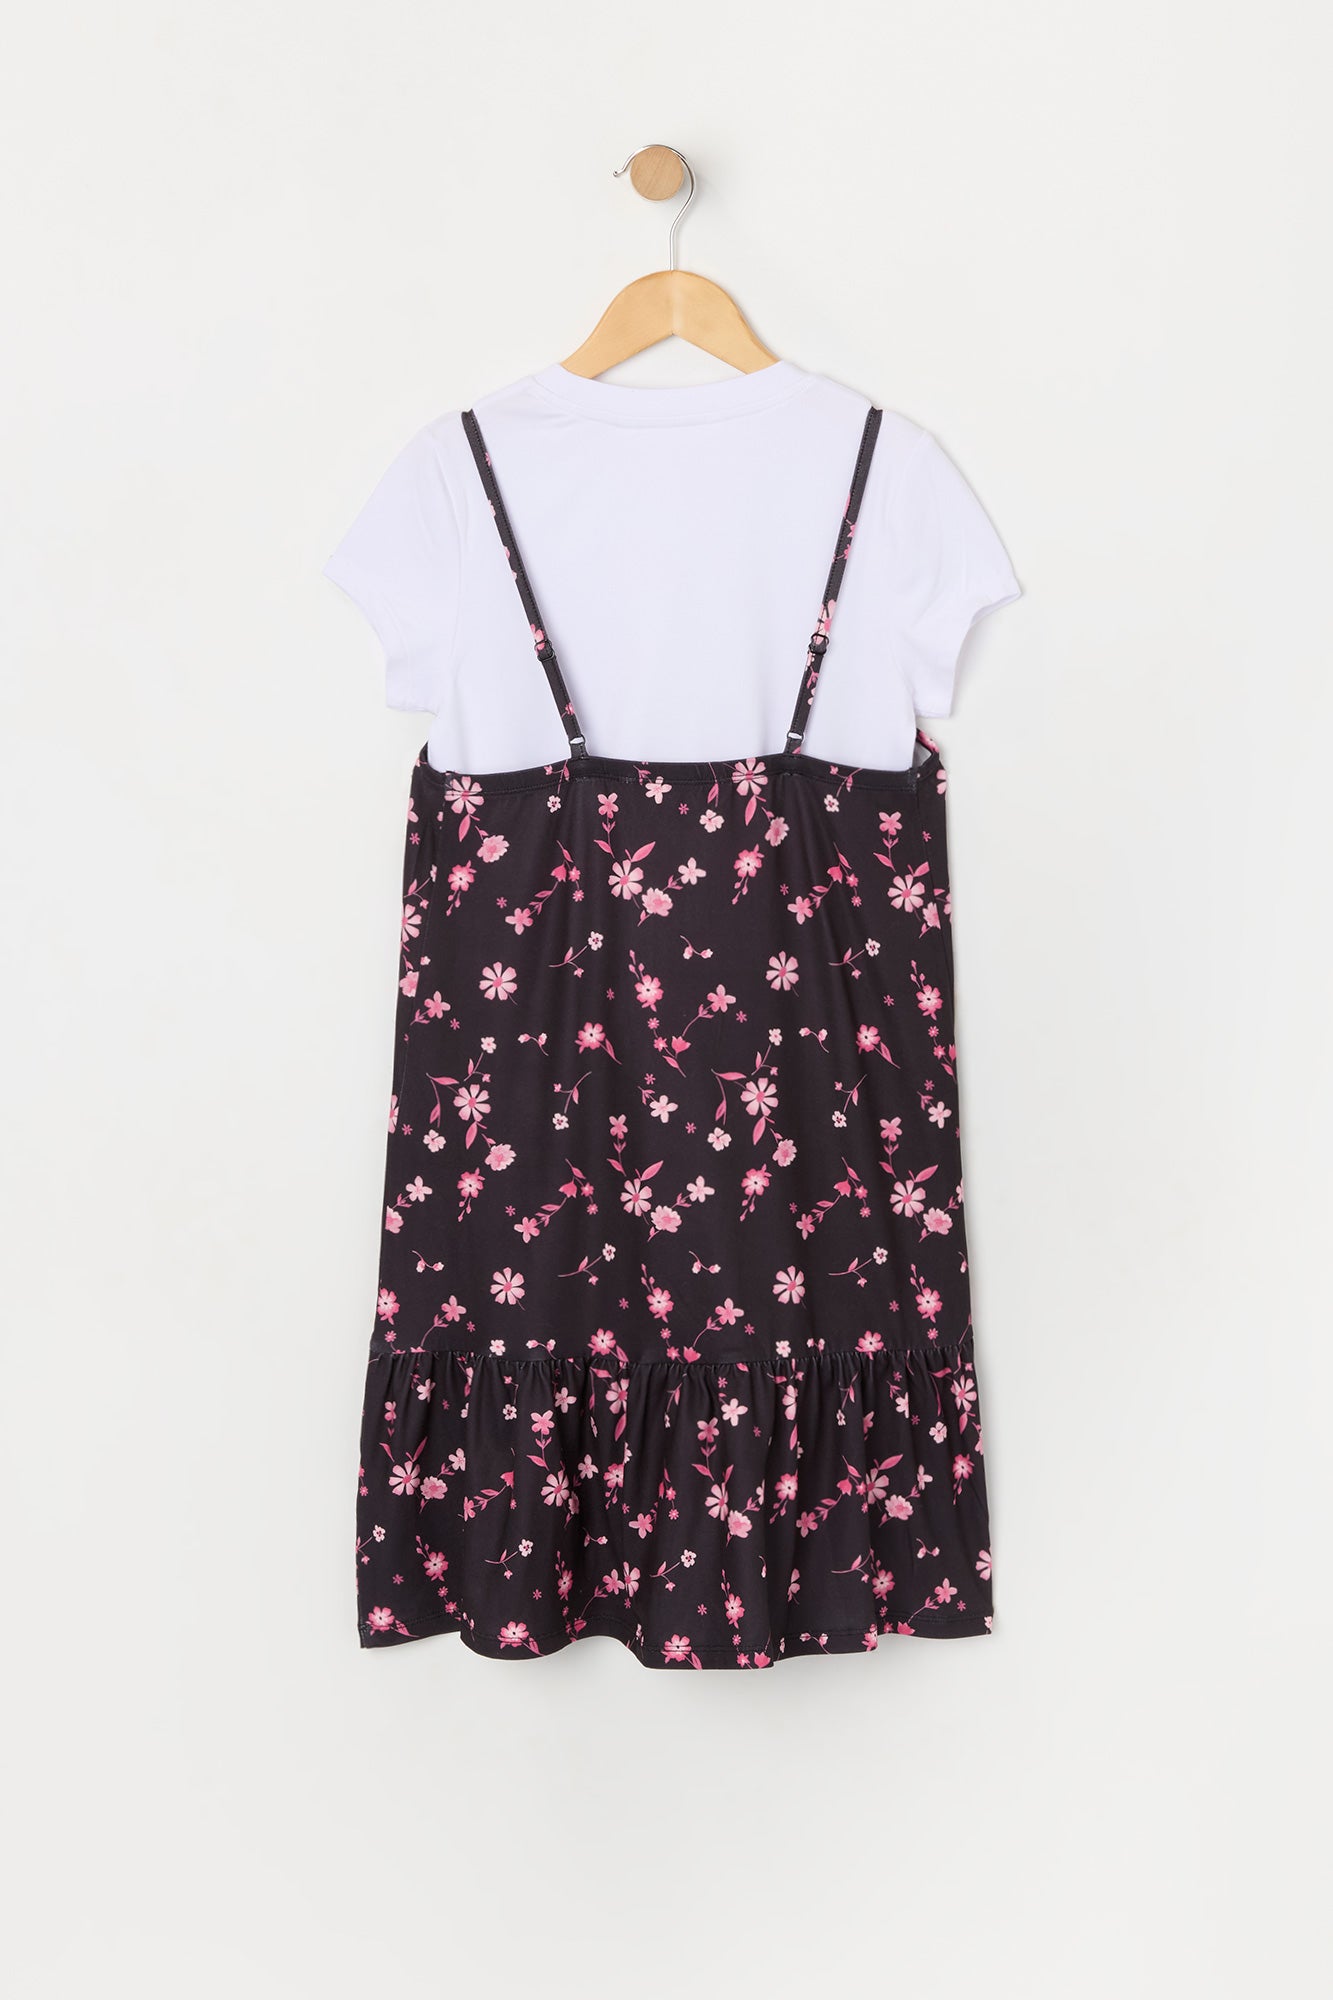 Girls Black Floral T-Shirt Dress 2 Piece Set